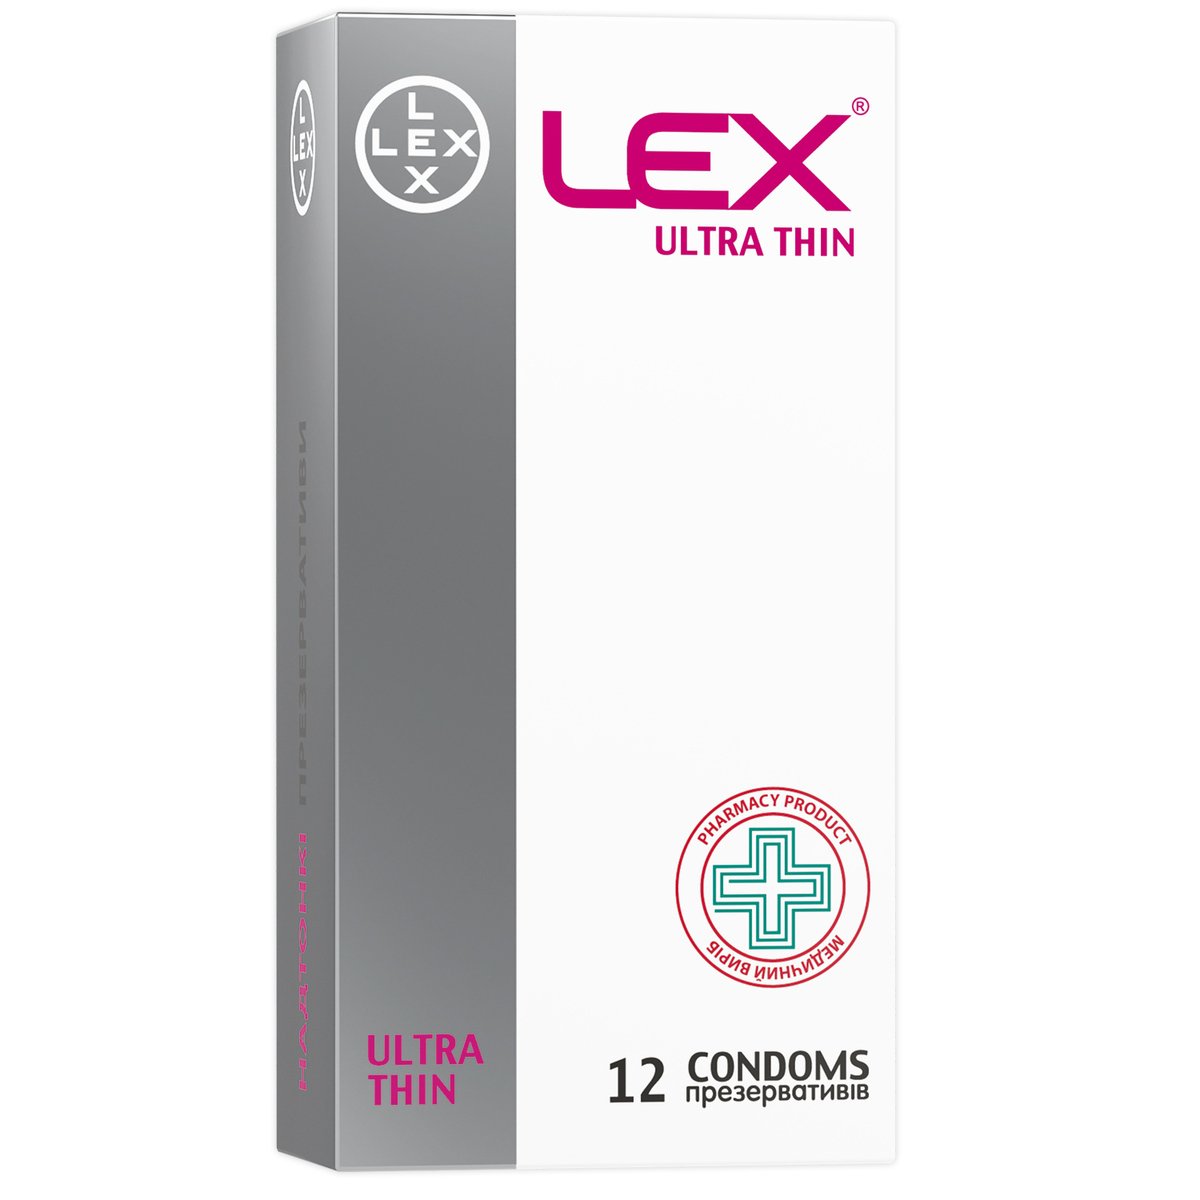 Презервативы Lex Ultra thin ультратонкие, 12 шт. (LEX/Thin/12) - фото 1